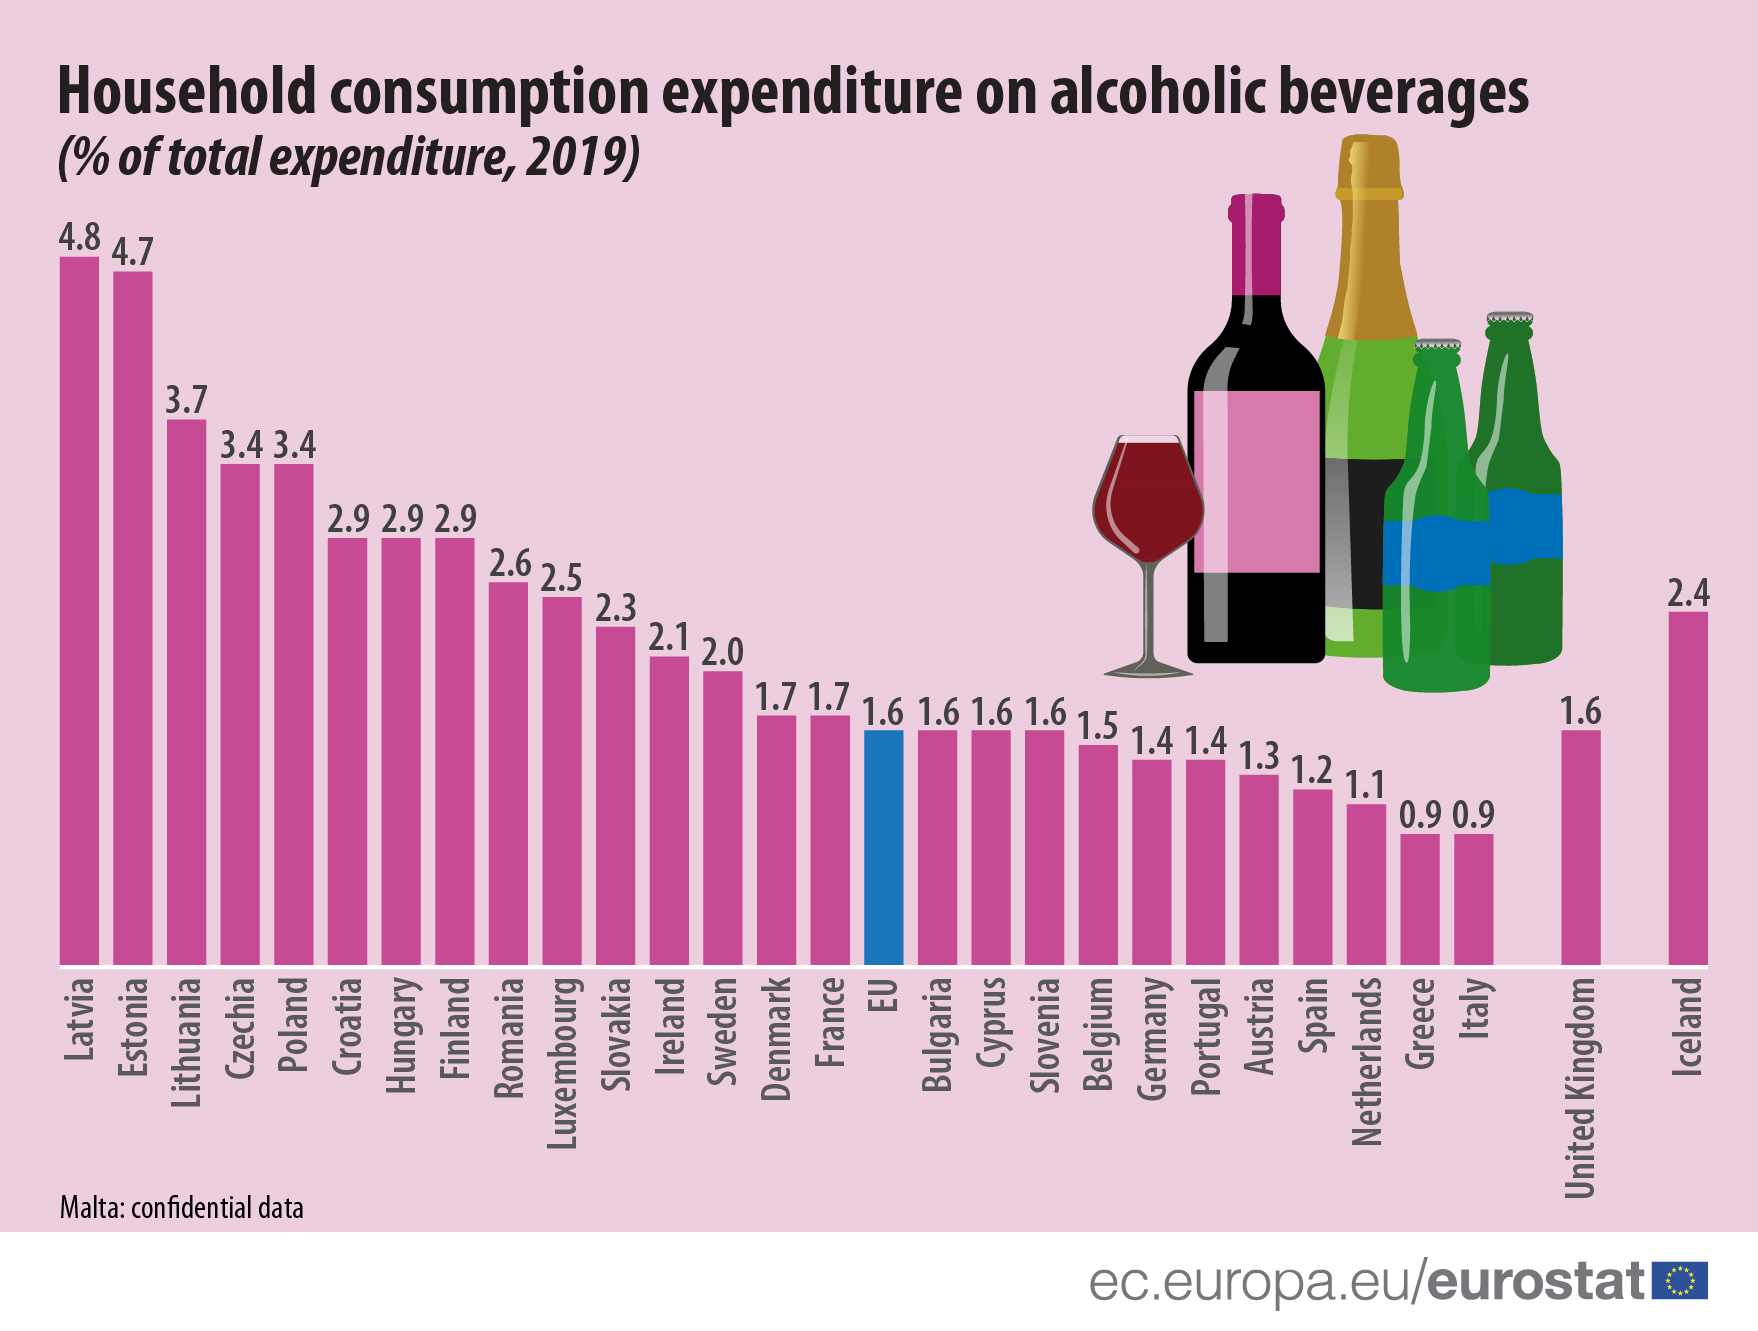 Najveći pad potrošnje alkohola u Litvaniji, najveći skok u Rumuniji 2